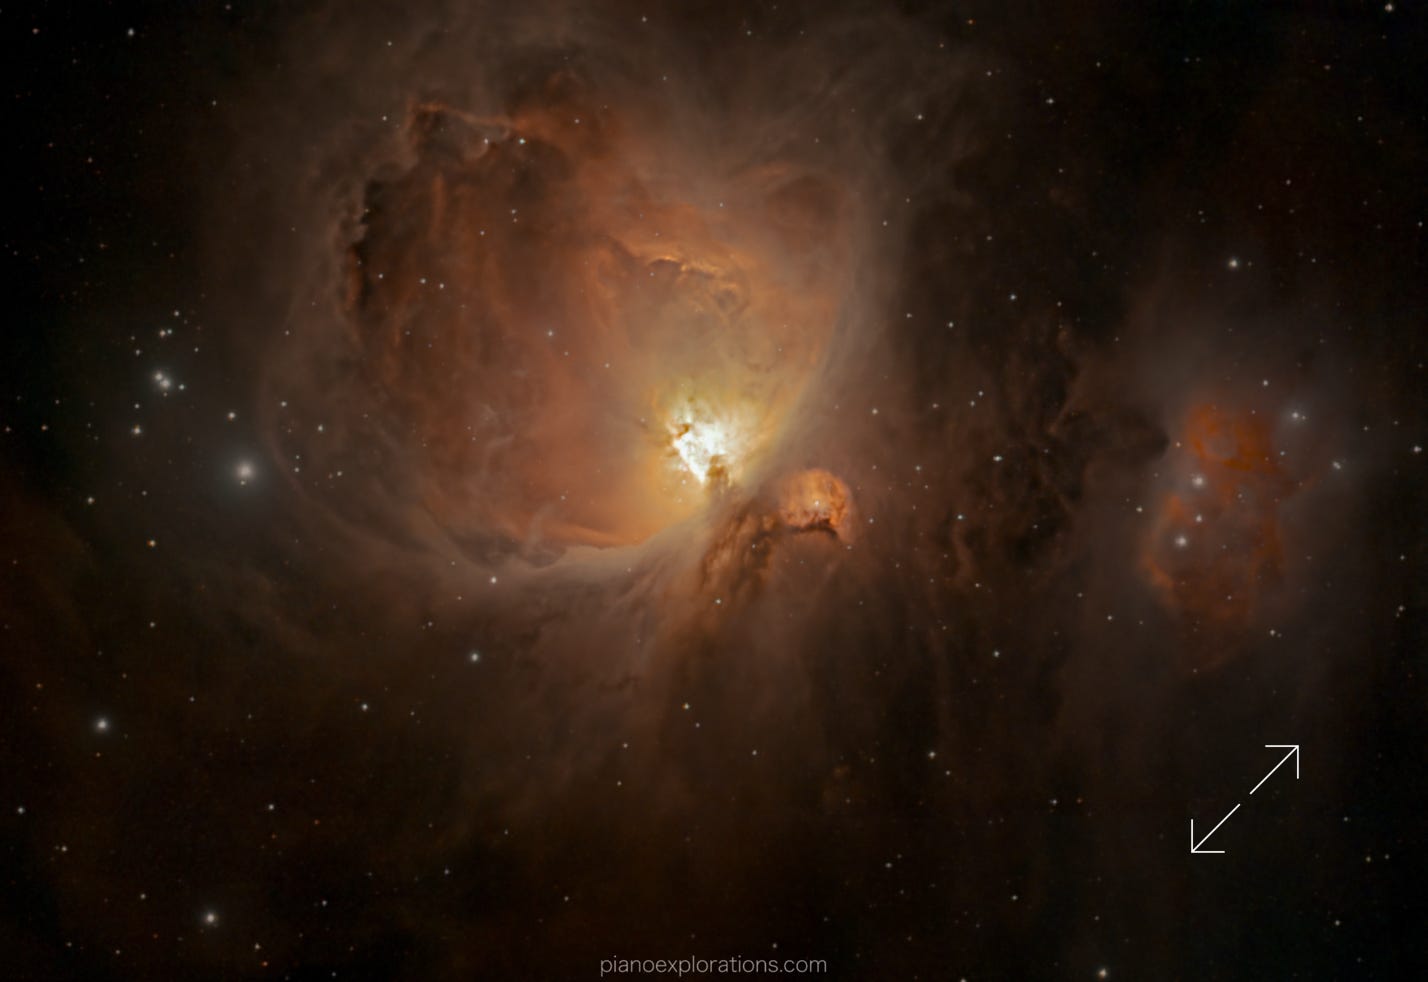 Wielka Mgławica w Orionie / Great Orion Nebula - Messier 42